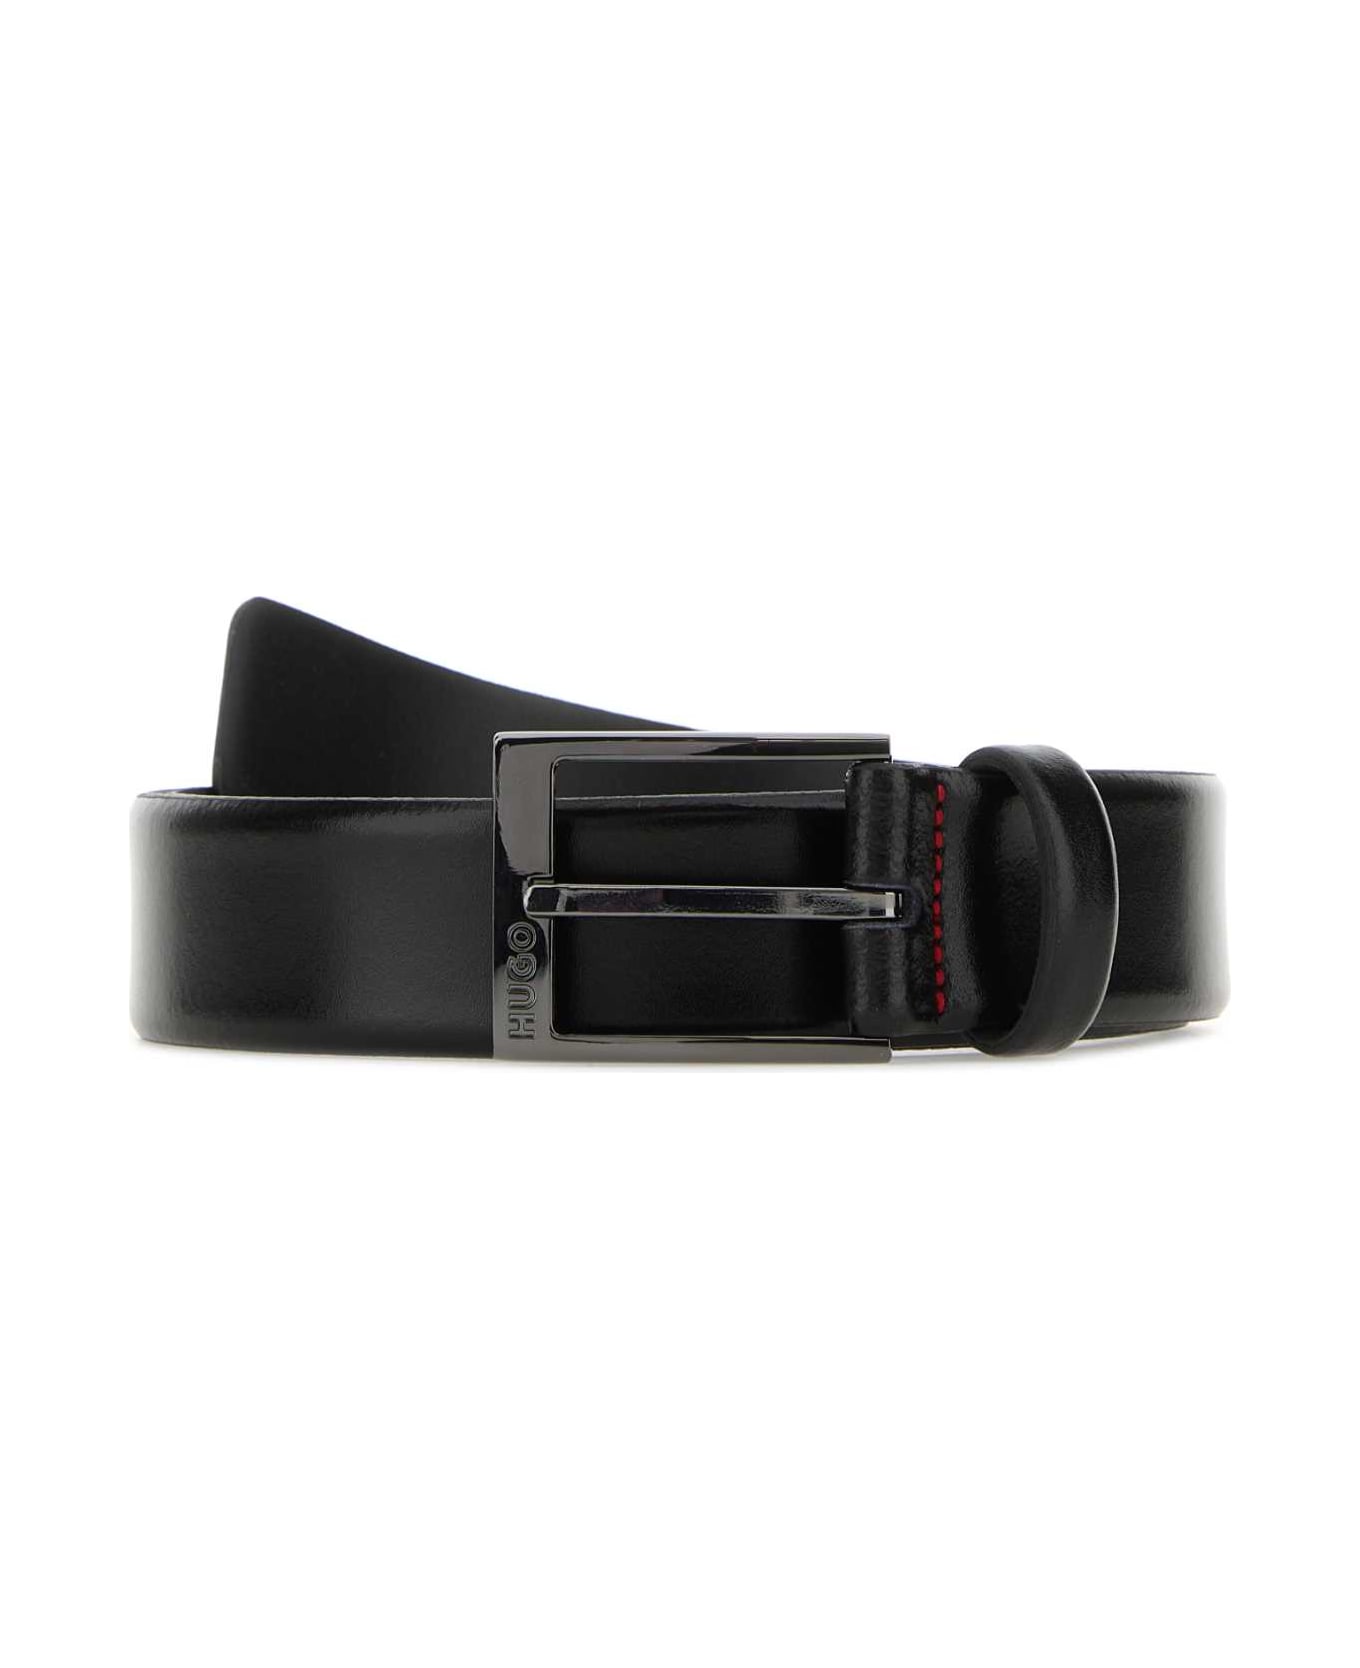 Hugo Boss Black Leather Belt - 001